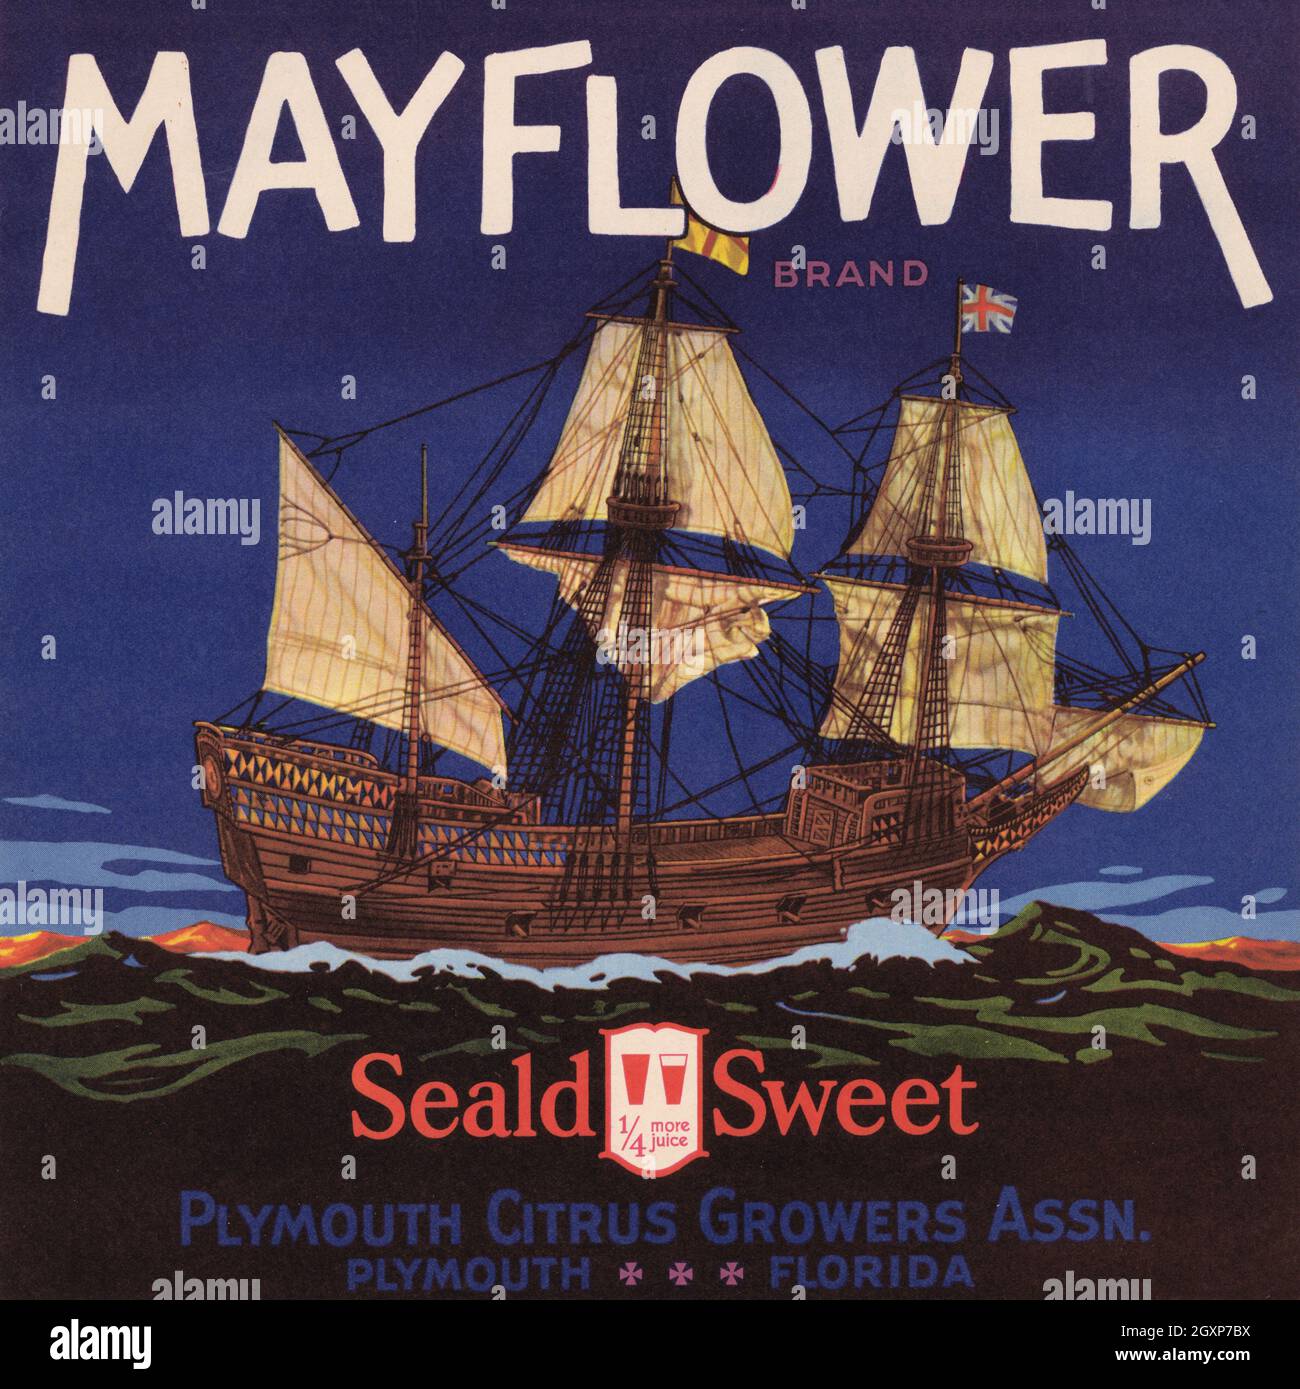 Mayflower Brand Stock Photo